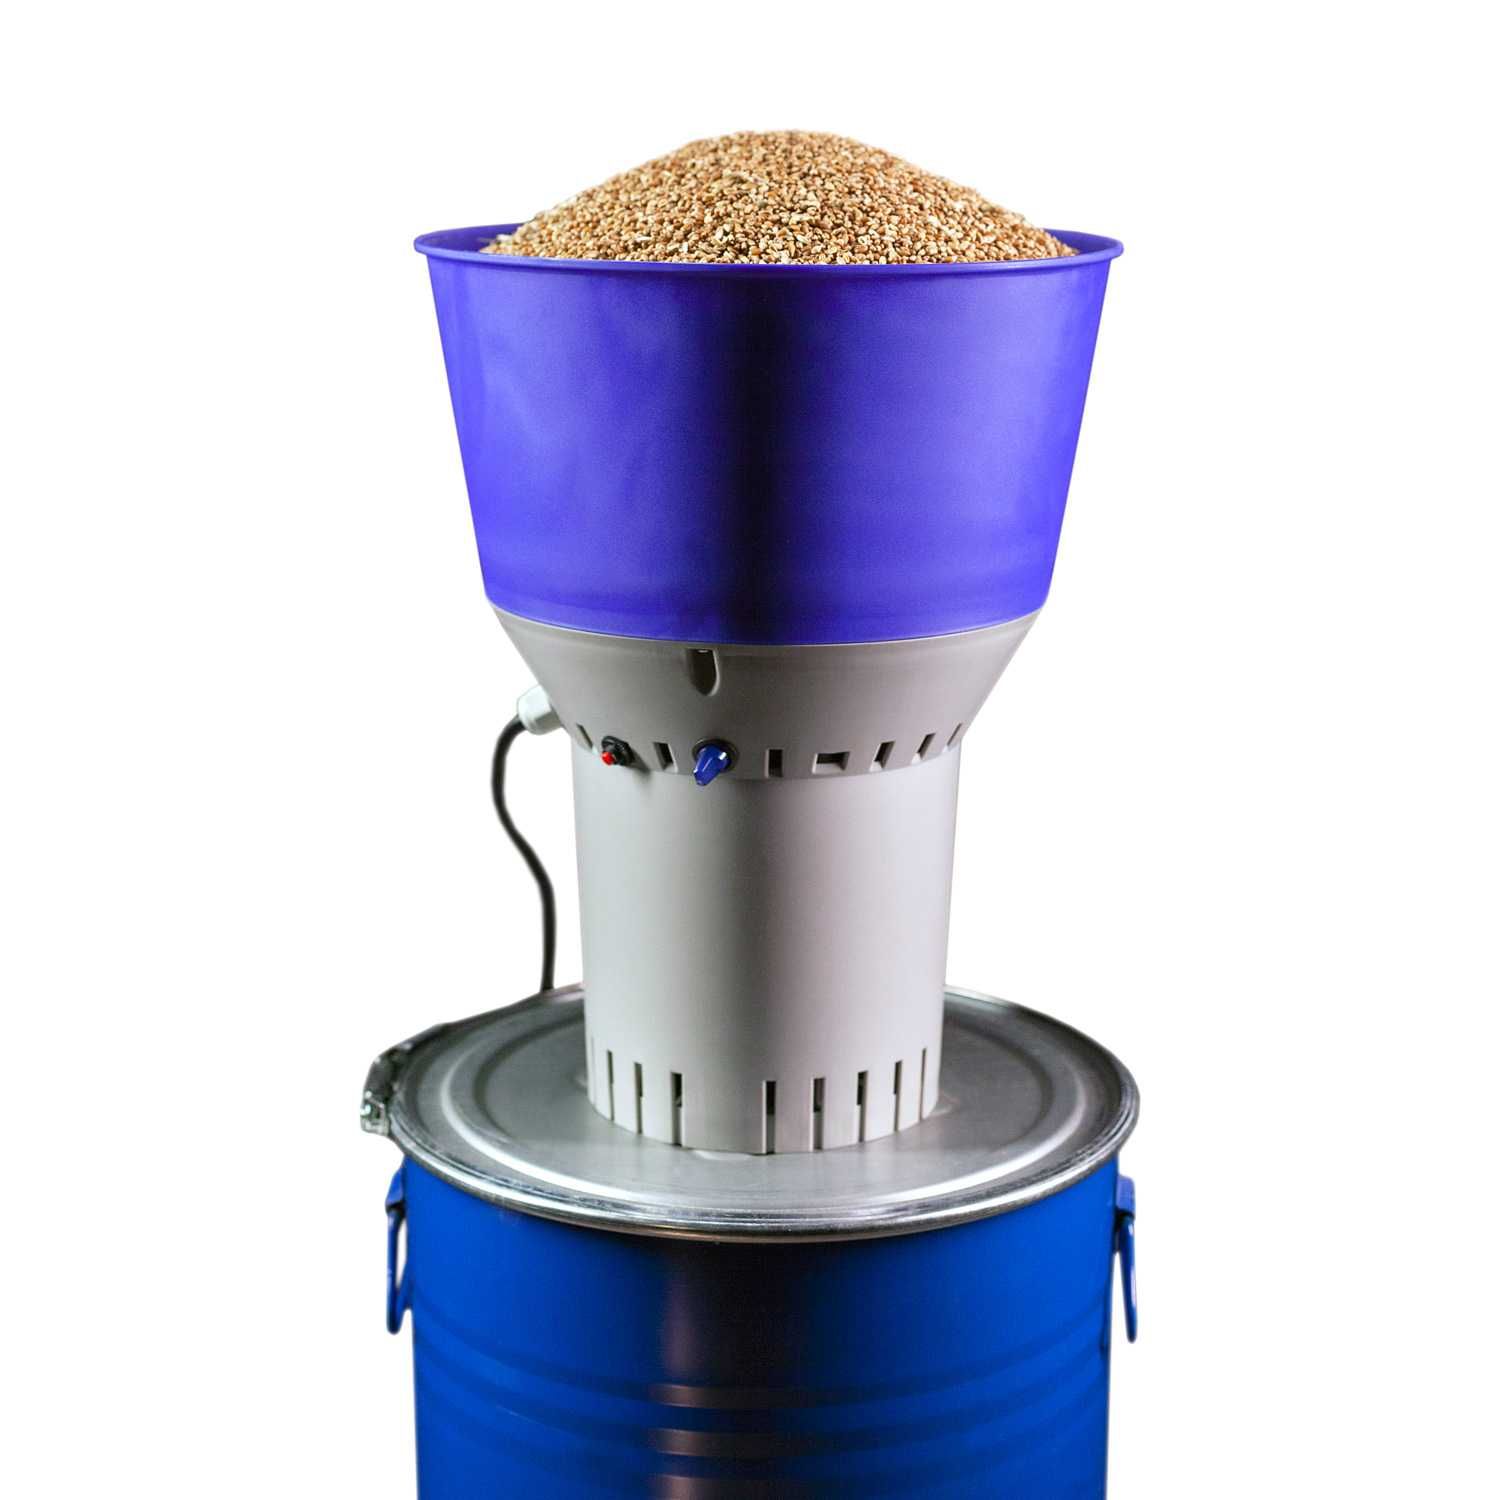 Moara de cereale Euromill-50 - stoc limitat